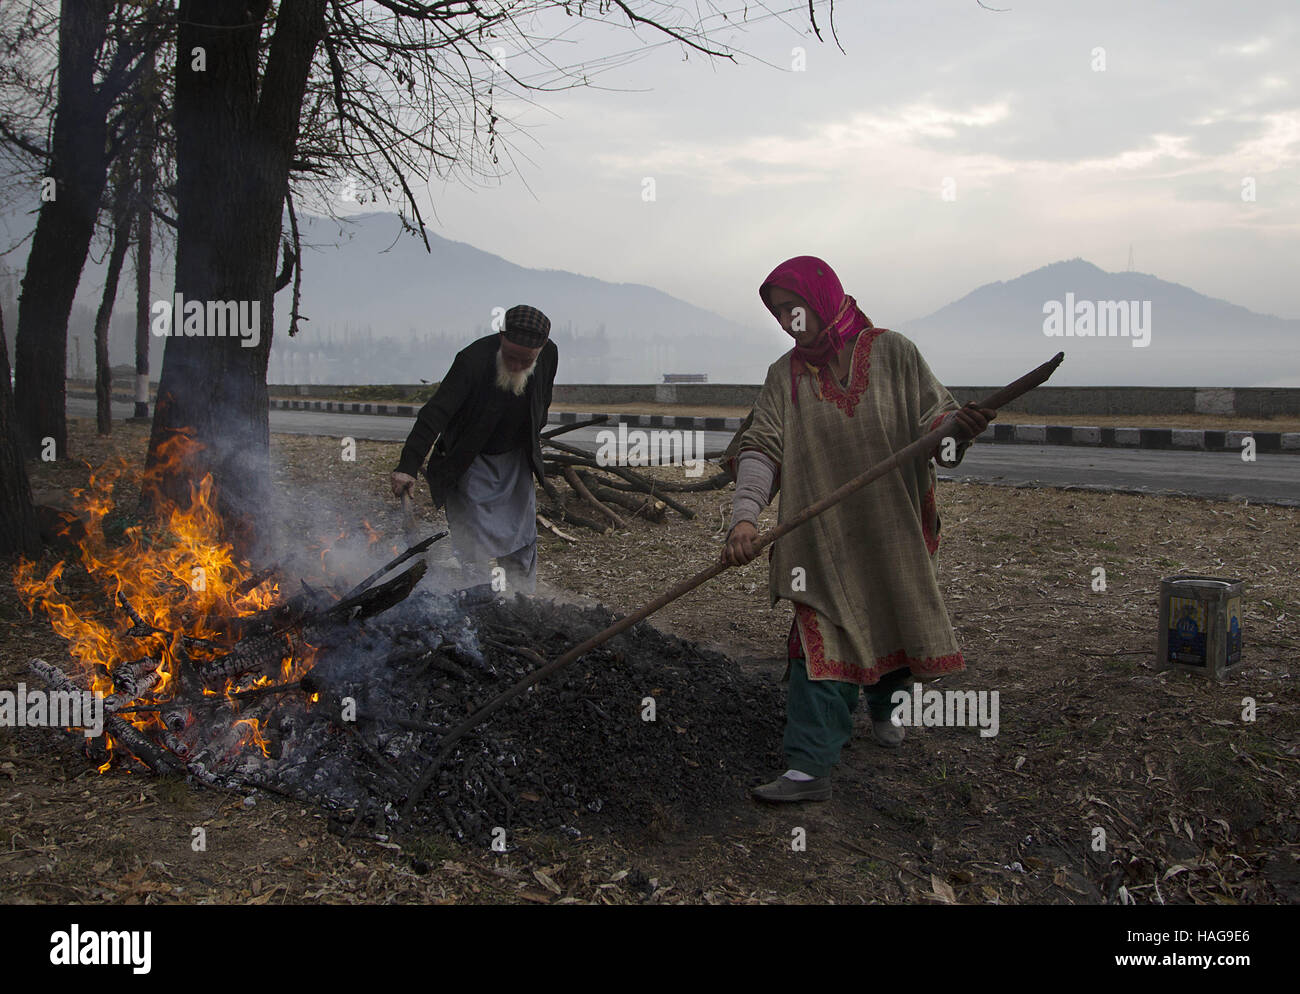 Srinagar, au Cachemire sous contrôle indien. 30Th Nov, 2016. Les gens brûlent du cachemire tombé des branches d'arbre pour en faire du charbon pour l'hiver au cours d'une froide journée de Srinagar, capitale d'été du Cachemire sous contrôle indien, le 30 novembre 2016. La température est demeurée au-dessous du point de congélation la nuit dans la plupart des régions du Cachemire sous contrôle indien. © Javed Dar/Xinhua/Alamy Live News Banque D'Images